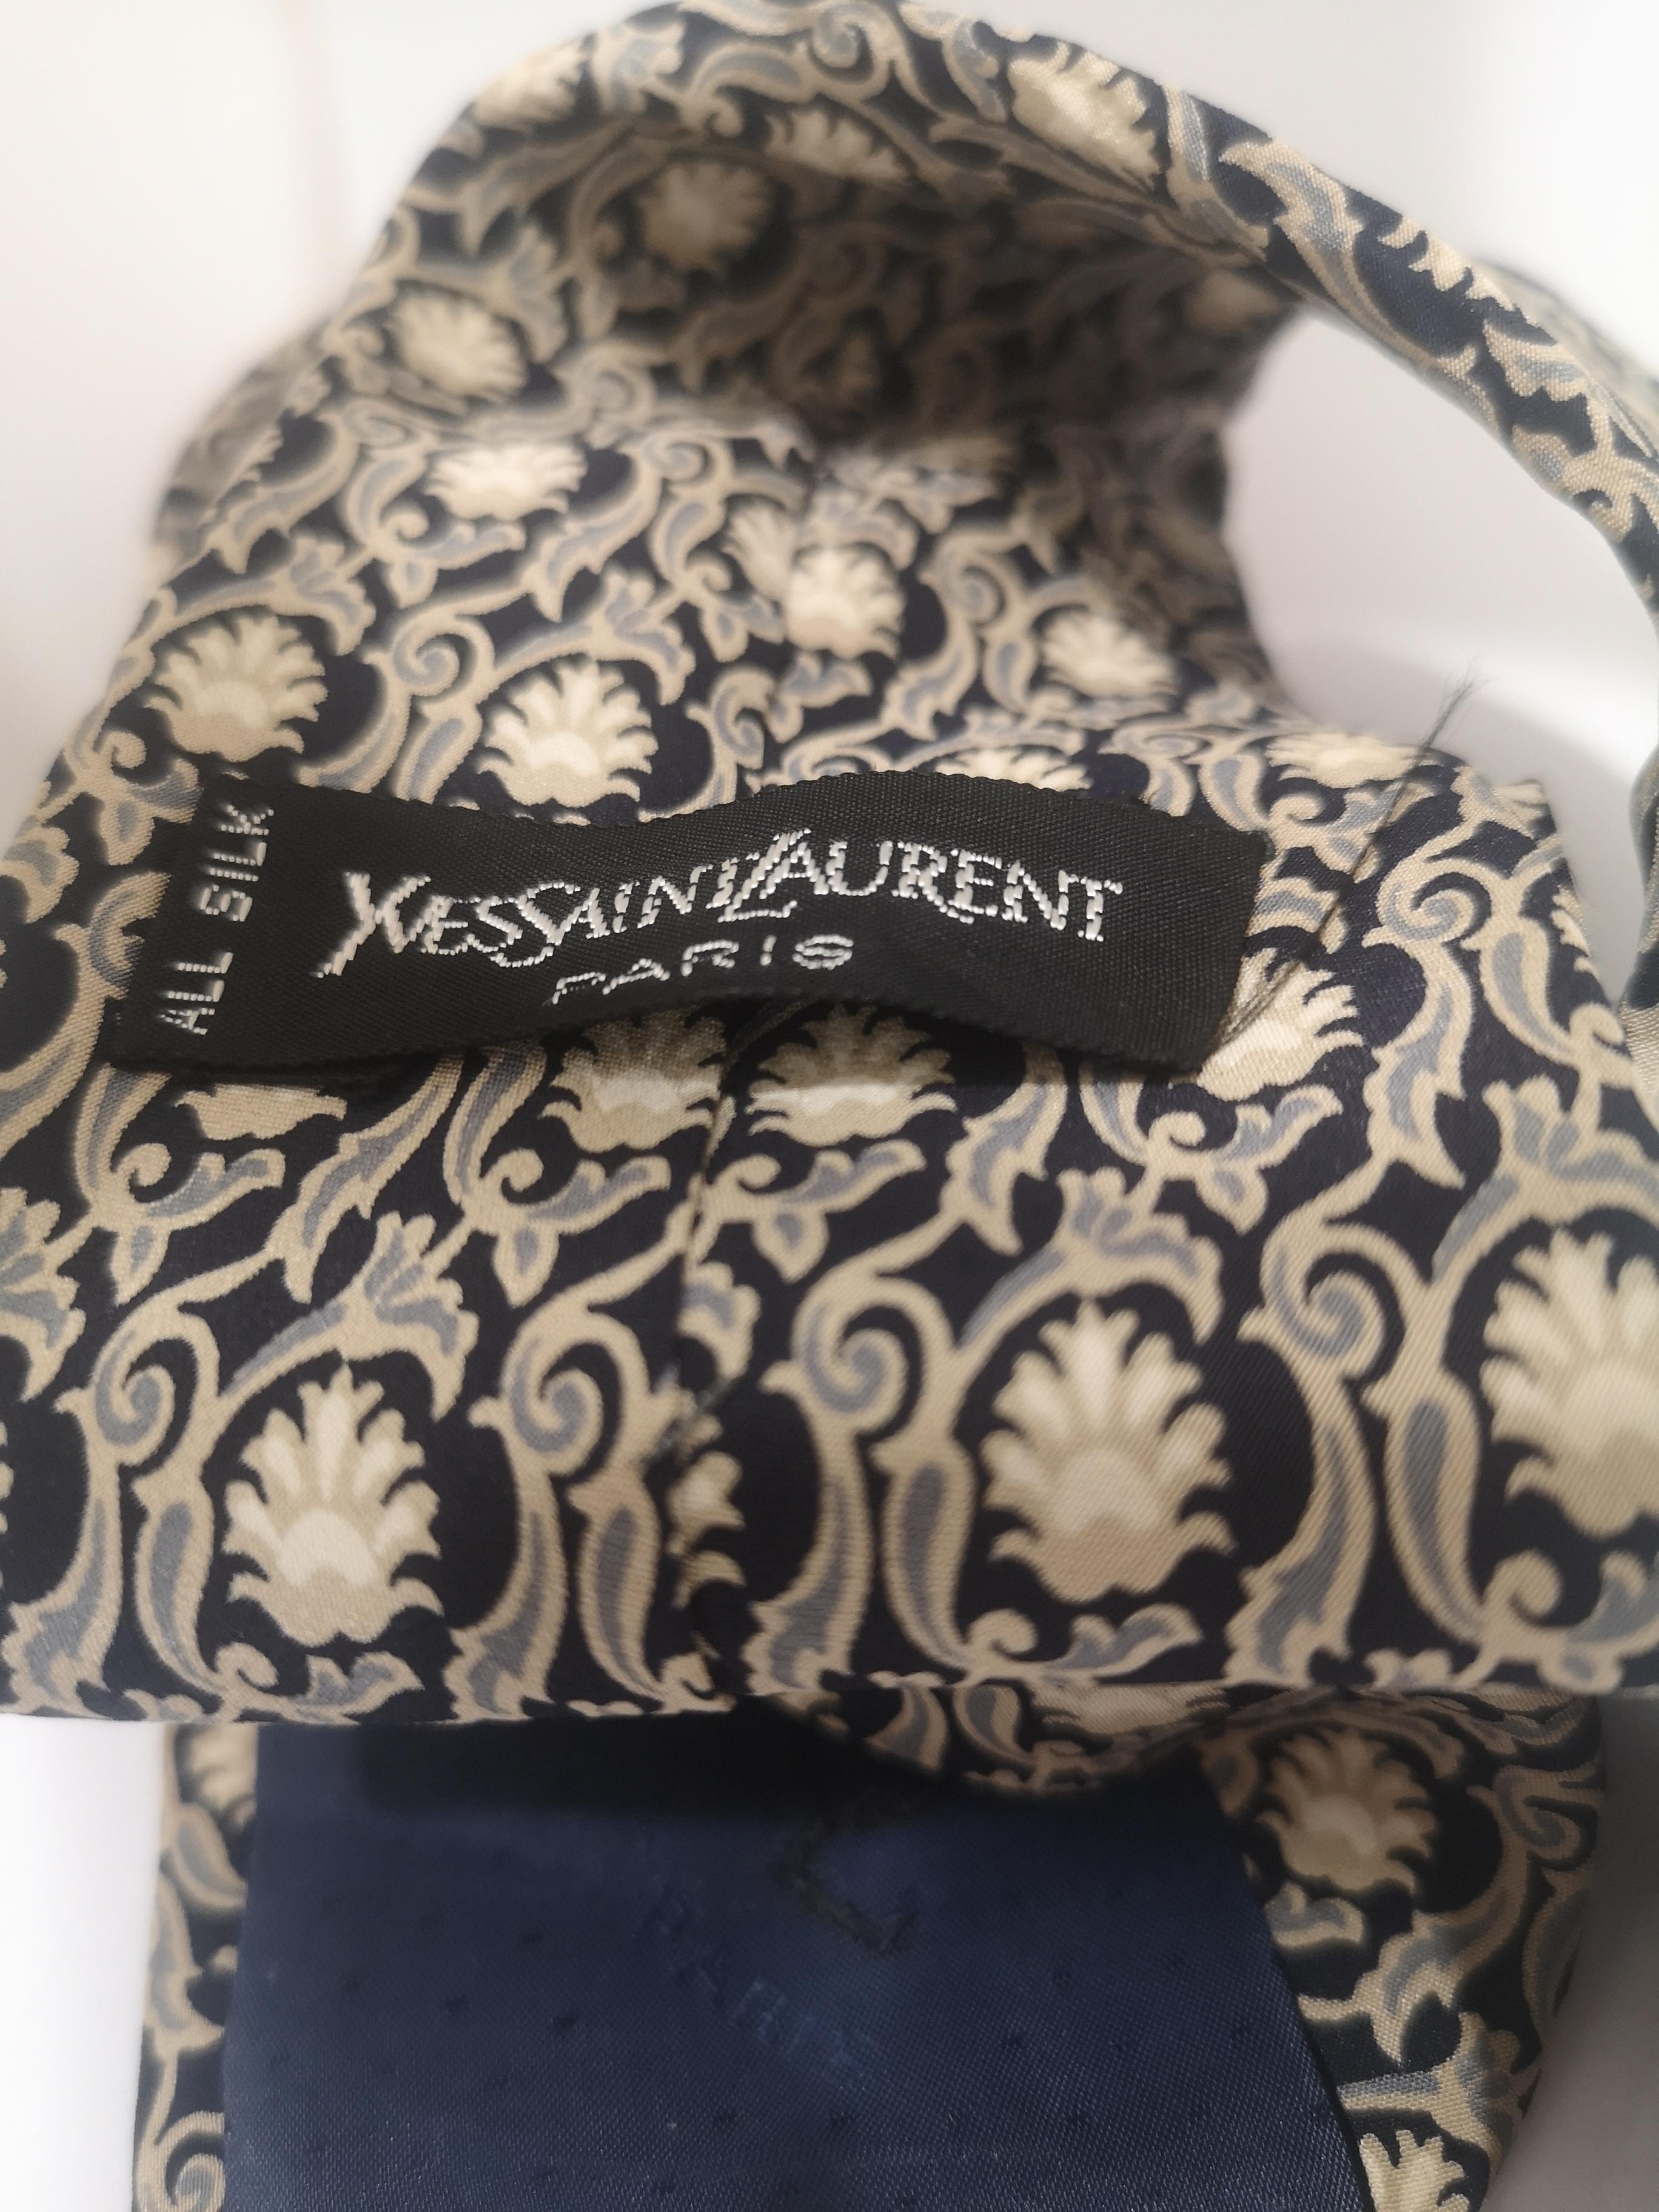 Yves Saint Laurent Vintage cravate en soie multicolore